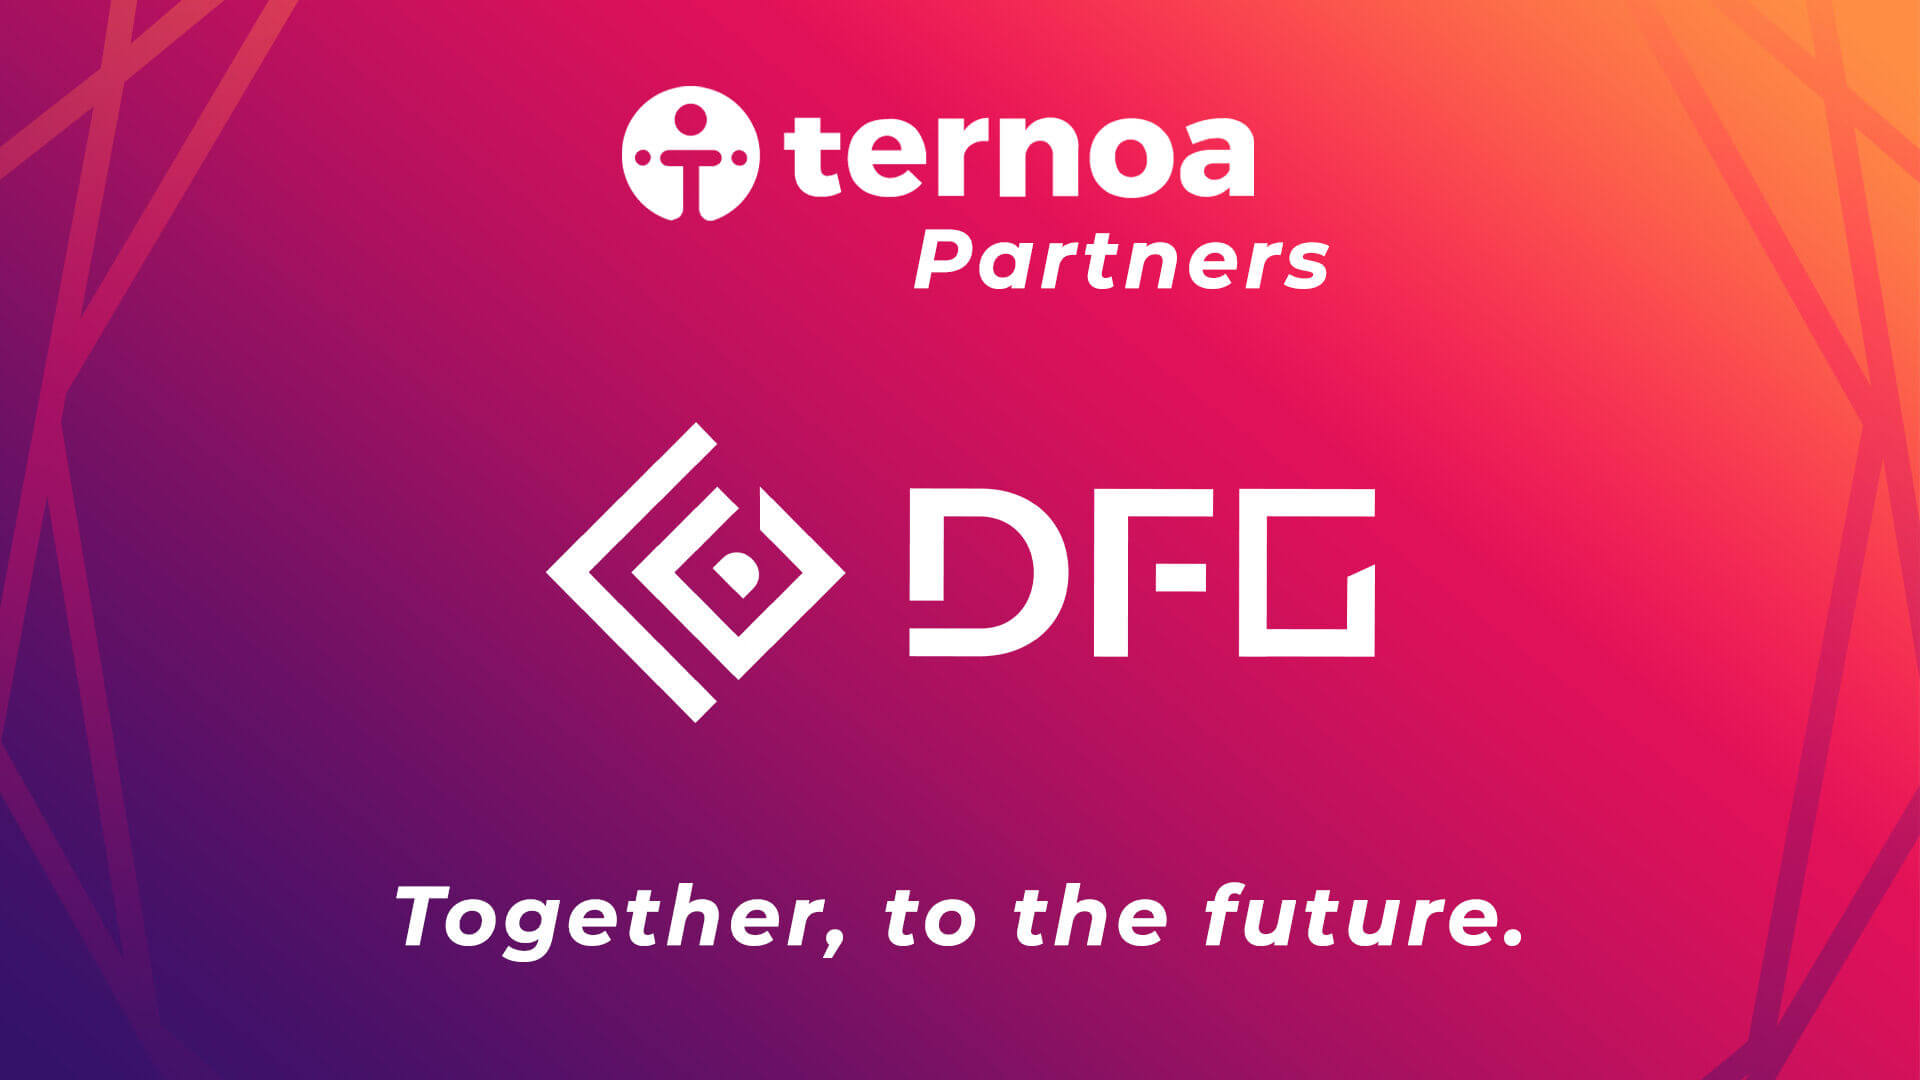 Un nouveau partenaire pour Ternoa prend place, il s'agit de DFG